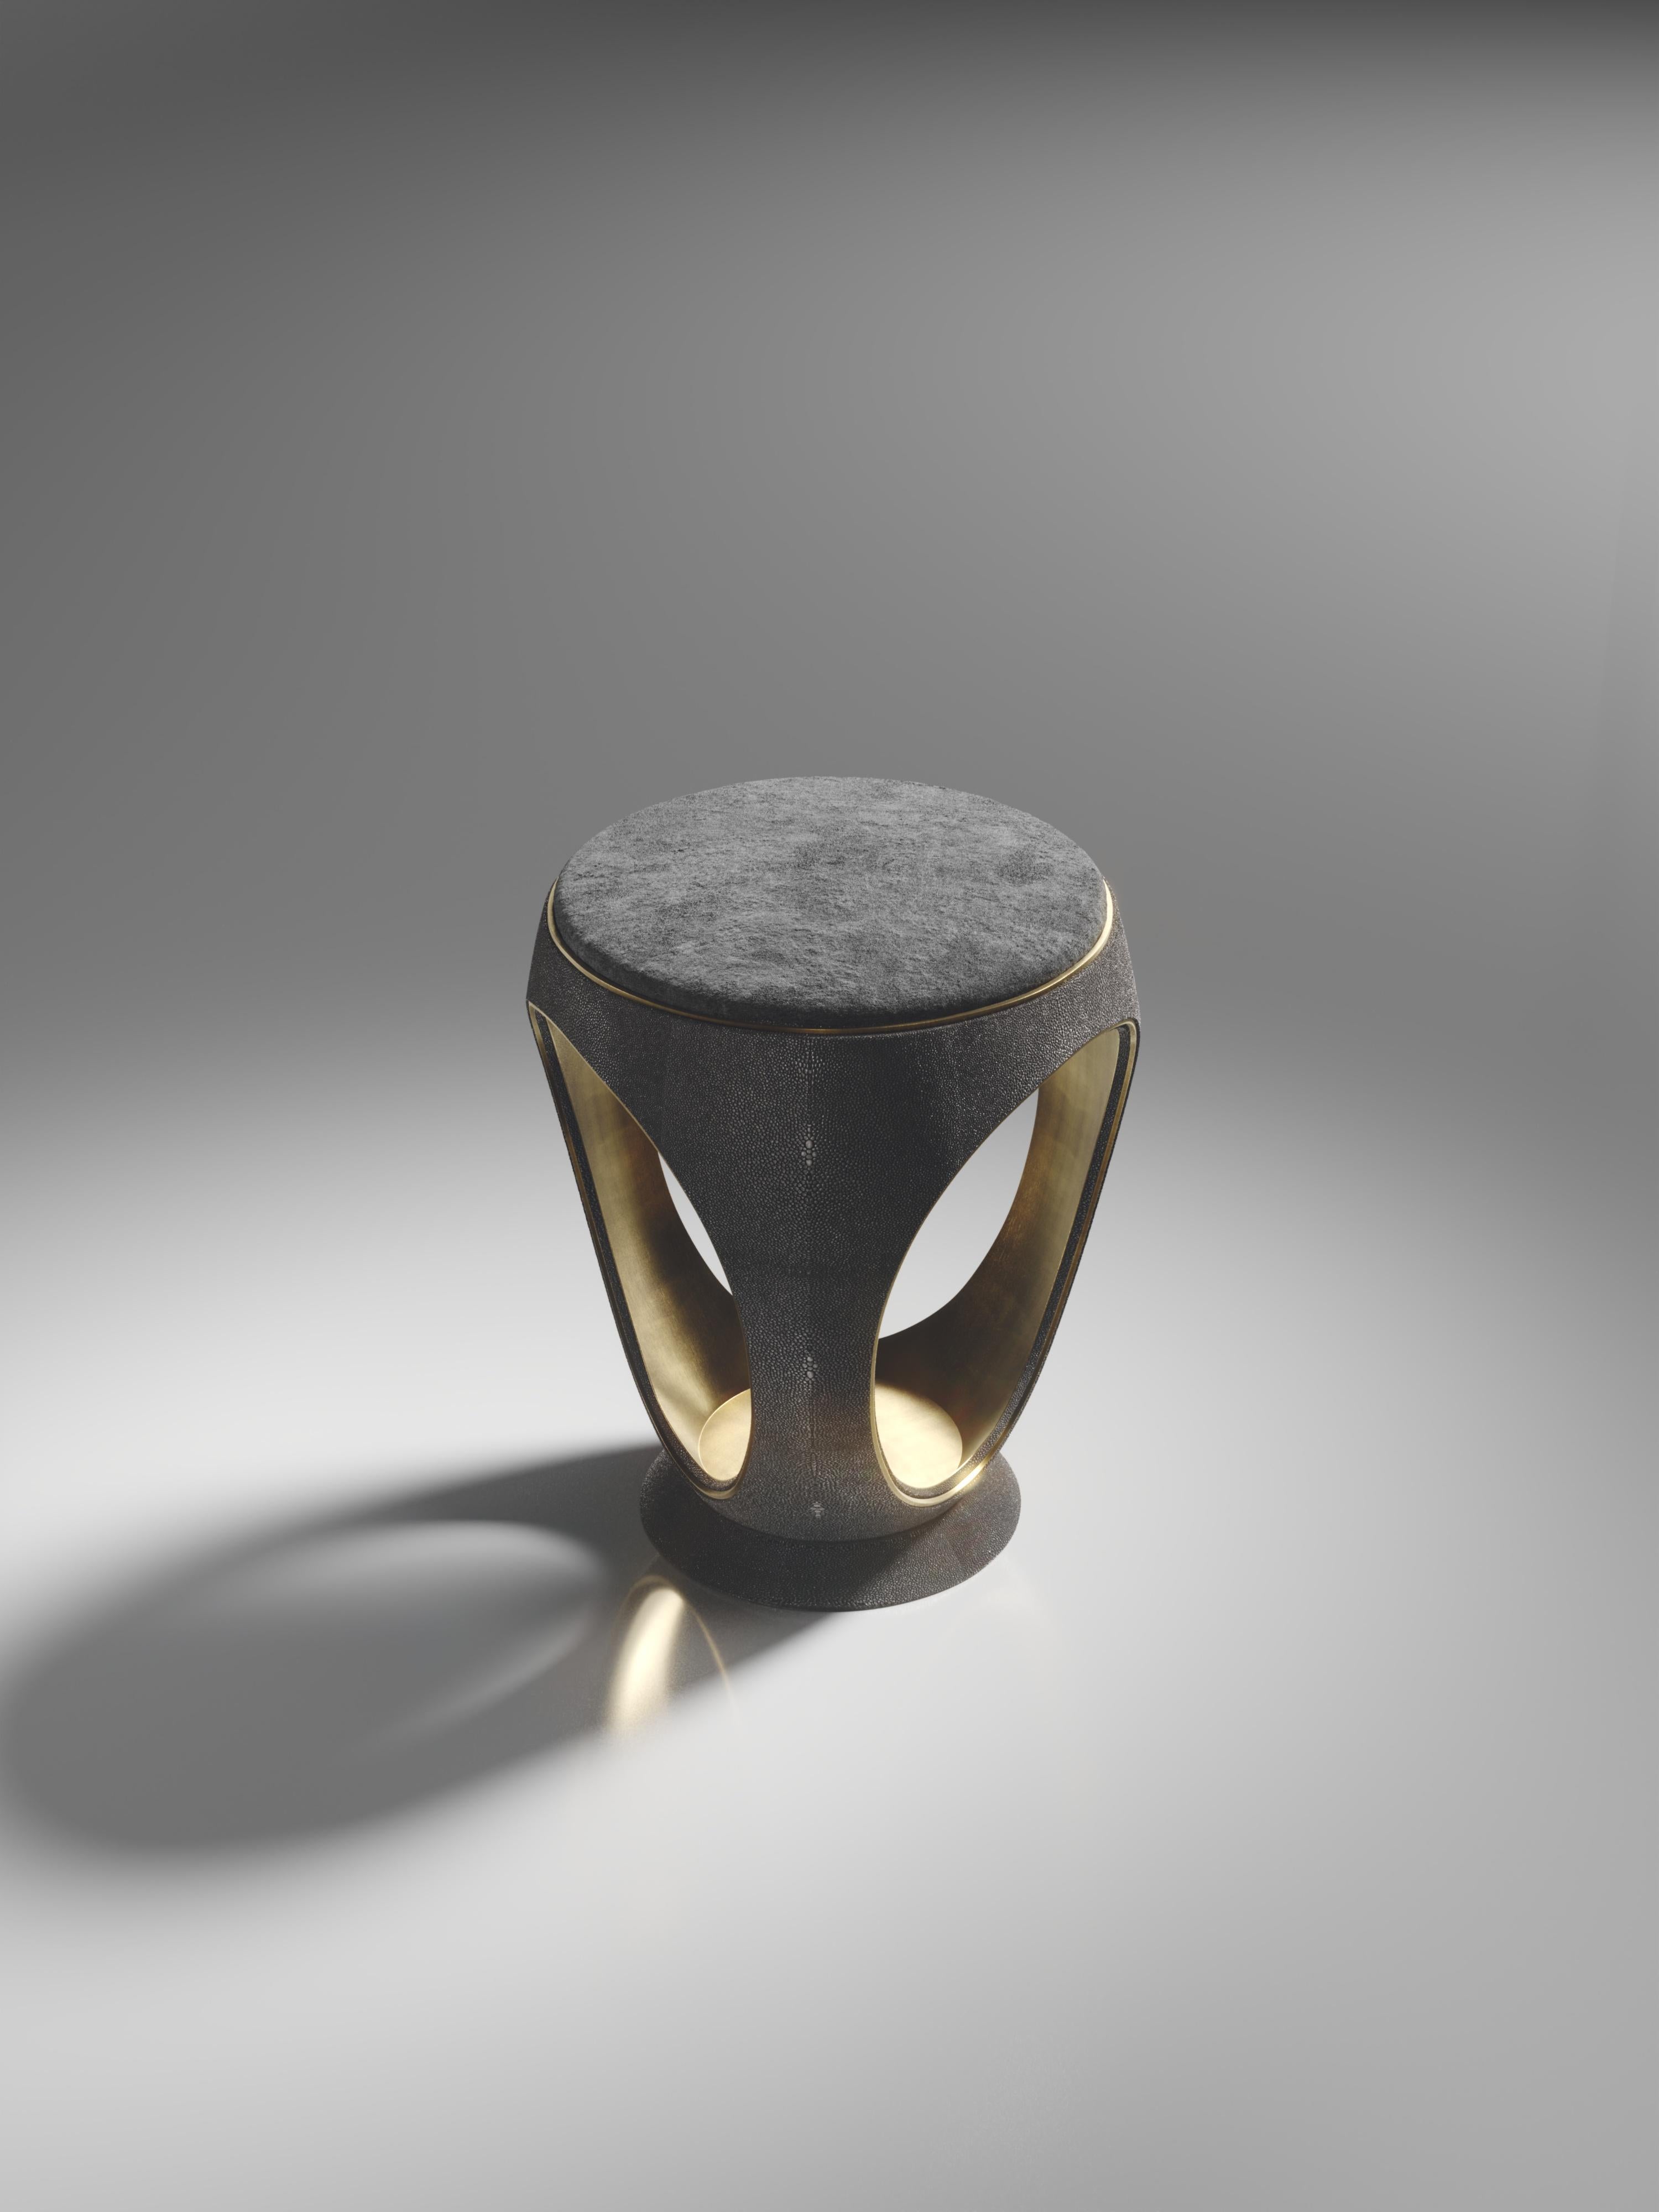 Der Ringhocker in schwarzem Chagrin ist eines der ikonischsten Stücke der R&Y Augousti Collection. Die skulpturale, juwelenähnliche Form wurde mit einer dezenten Einkerbung aus Bronze-Patina-Messing an der Außenseite sowie mit einer Einlage aus